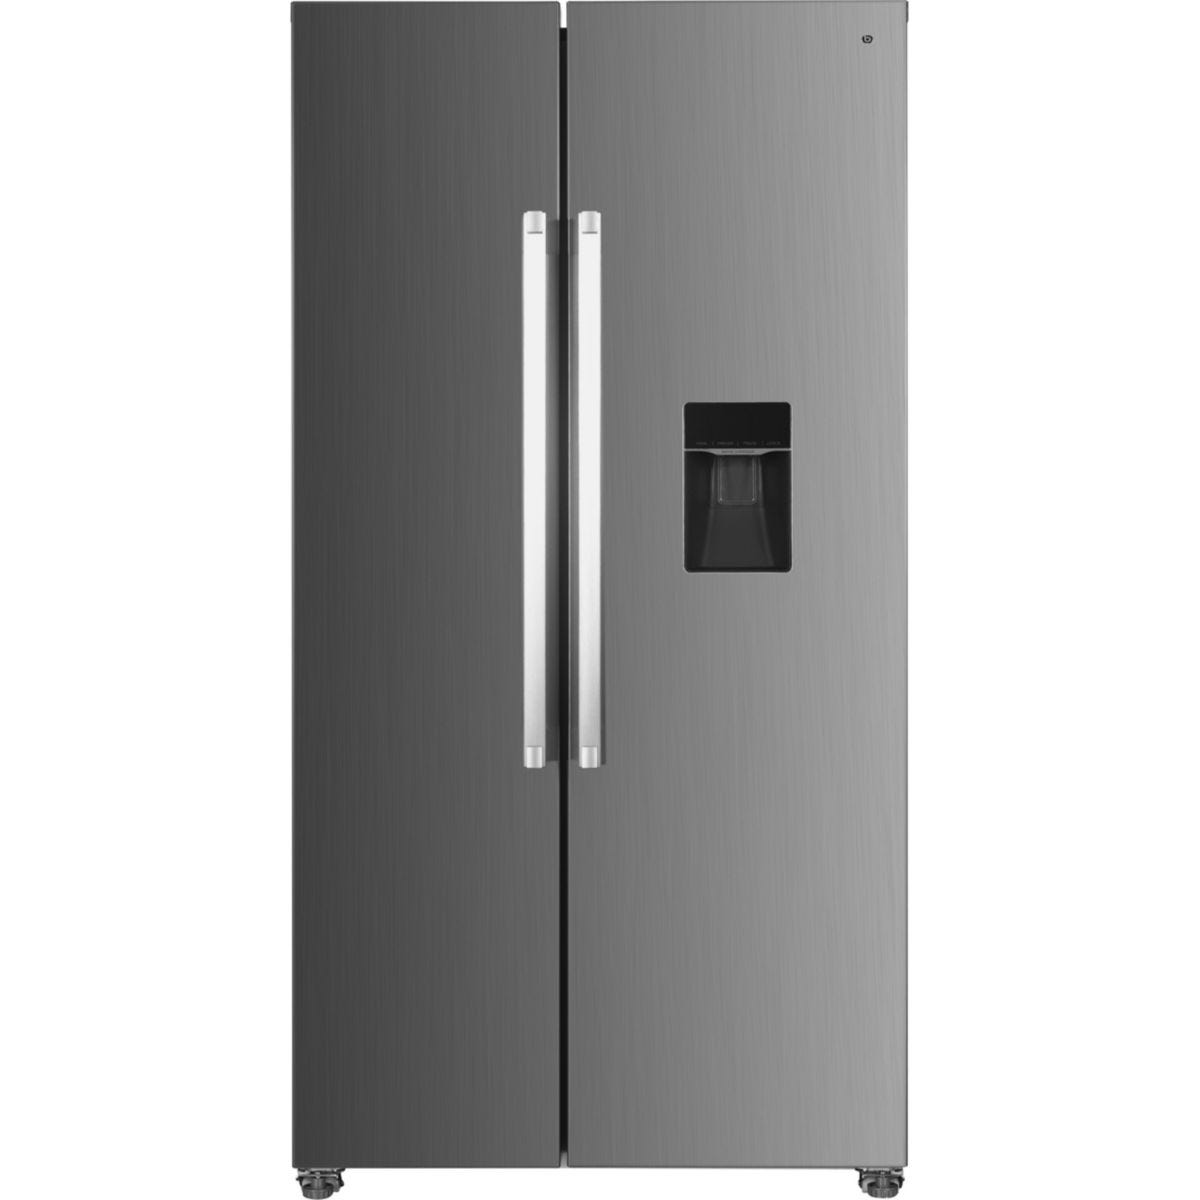 Comment changer le bac à glaçons d'un réfrigérateur américain ? - TUTO